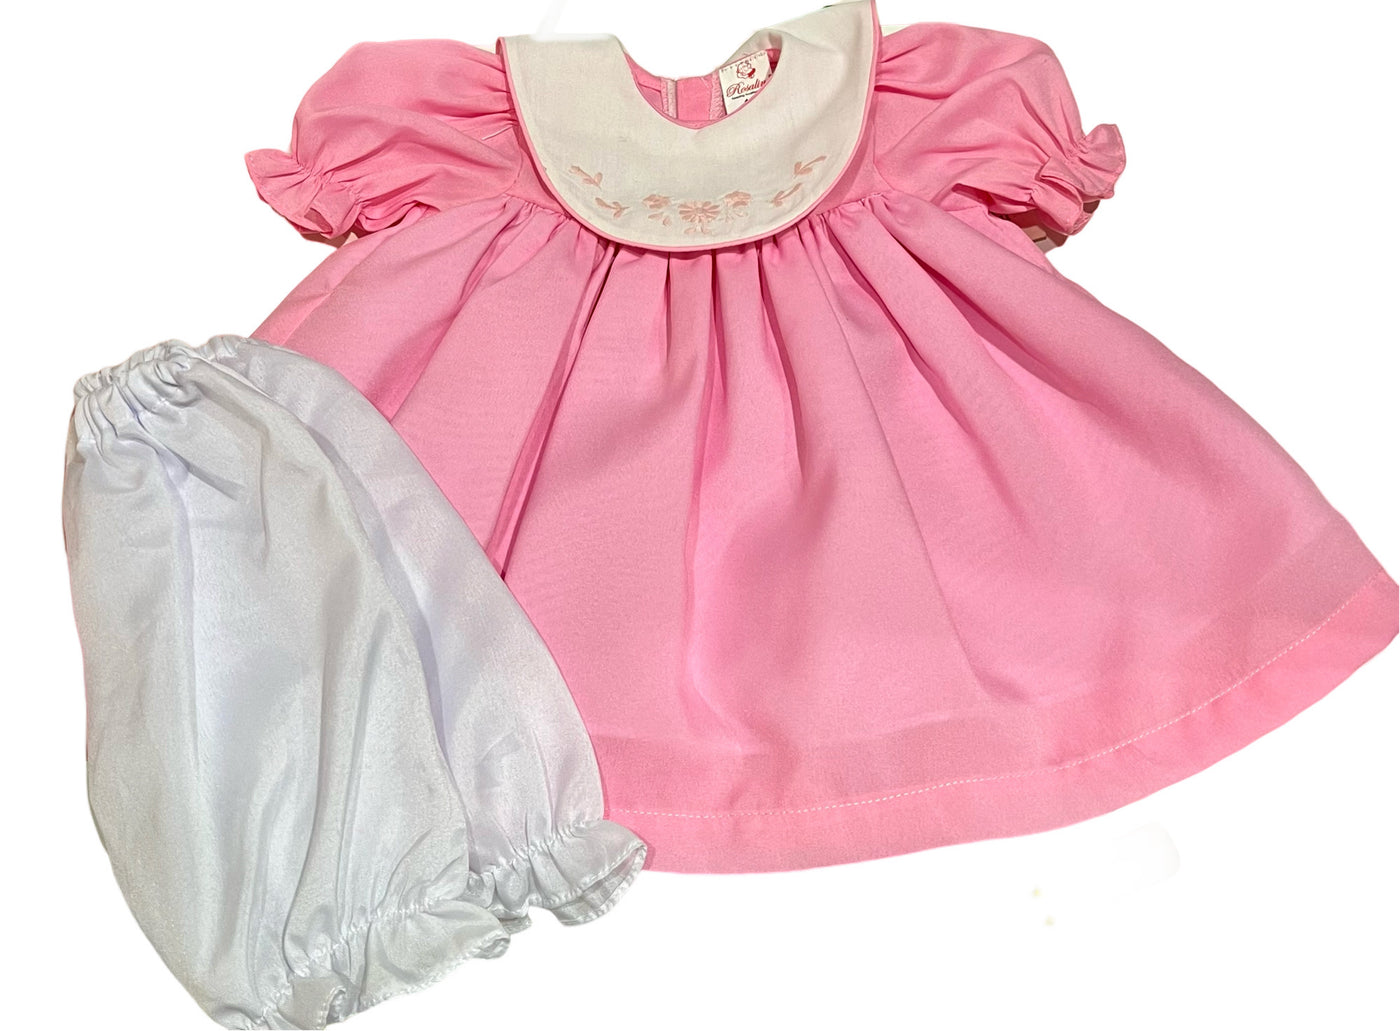 18" Doll Dress Pink w/White Bib